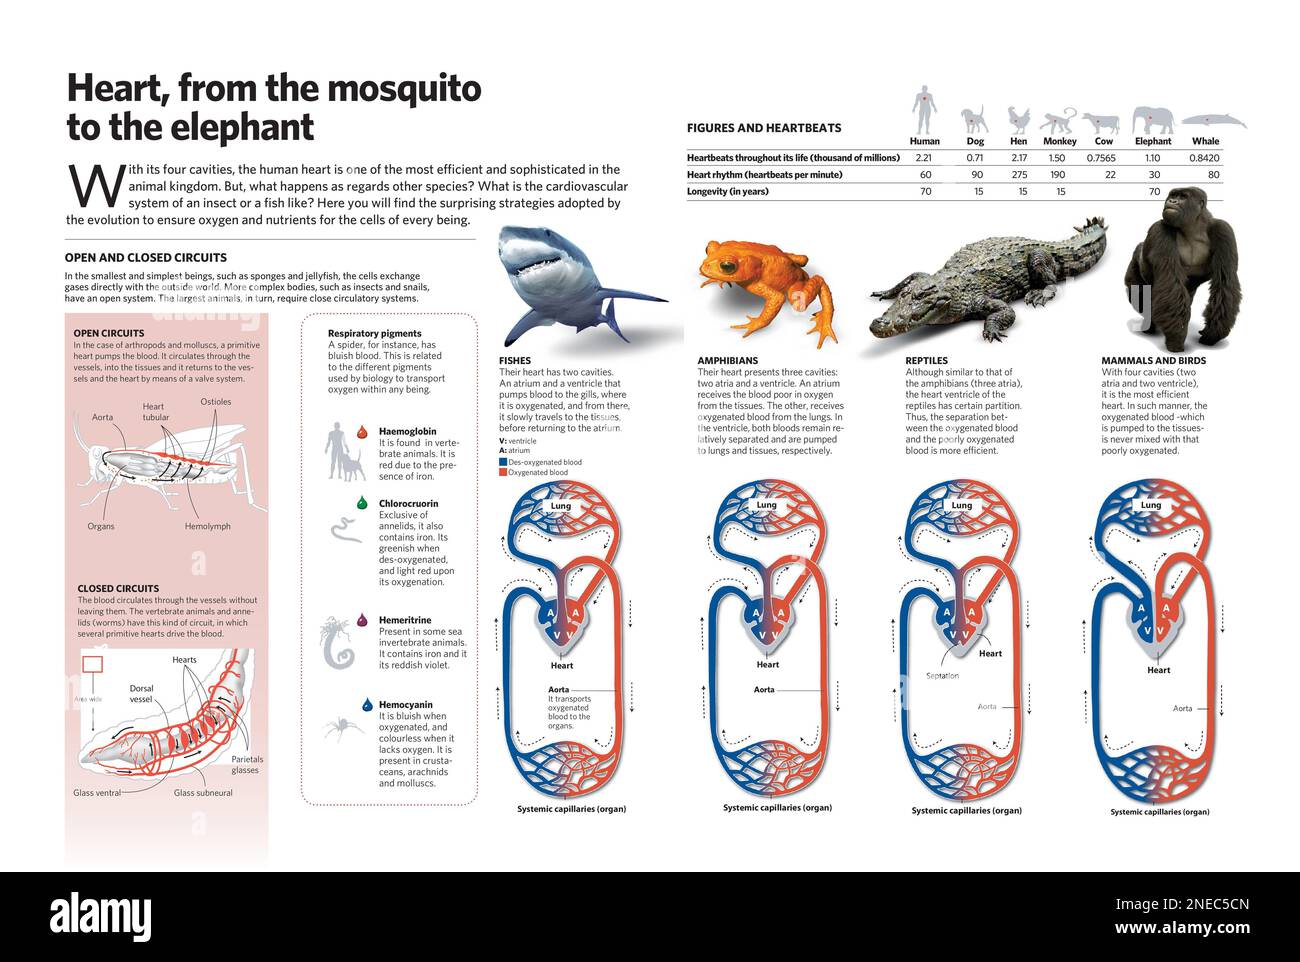 Infografik über das Herz-Kreislauf-System von Insekten, Fischen, Amphibien, Reptilien, Säugetieren und Vögeln; Verglichen mit Menschen. [Adobe InDesign (.indd)]. Stockfoto